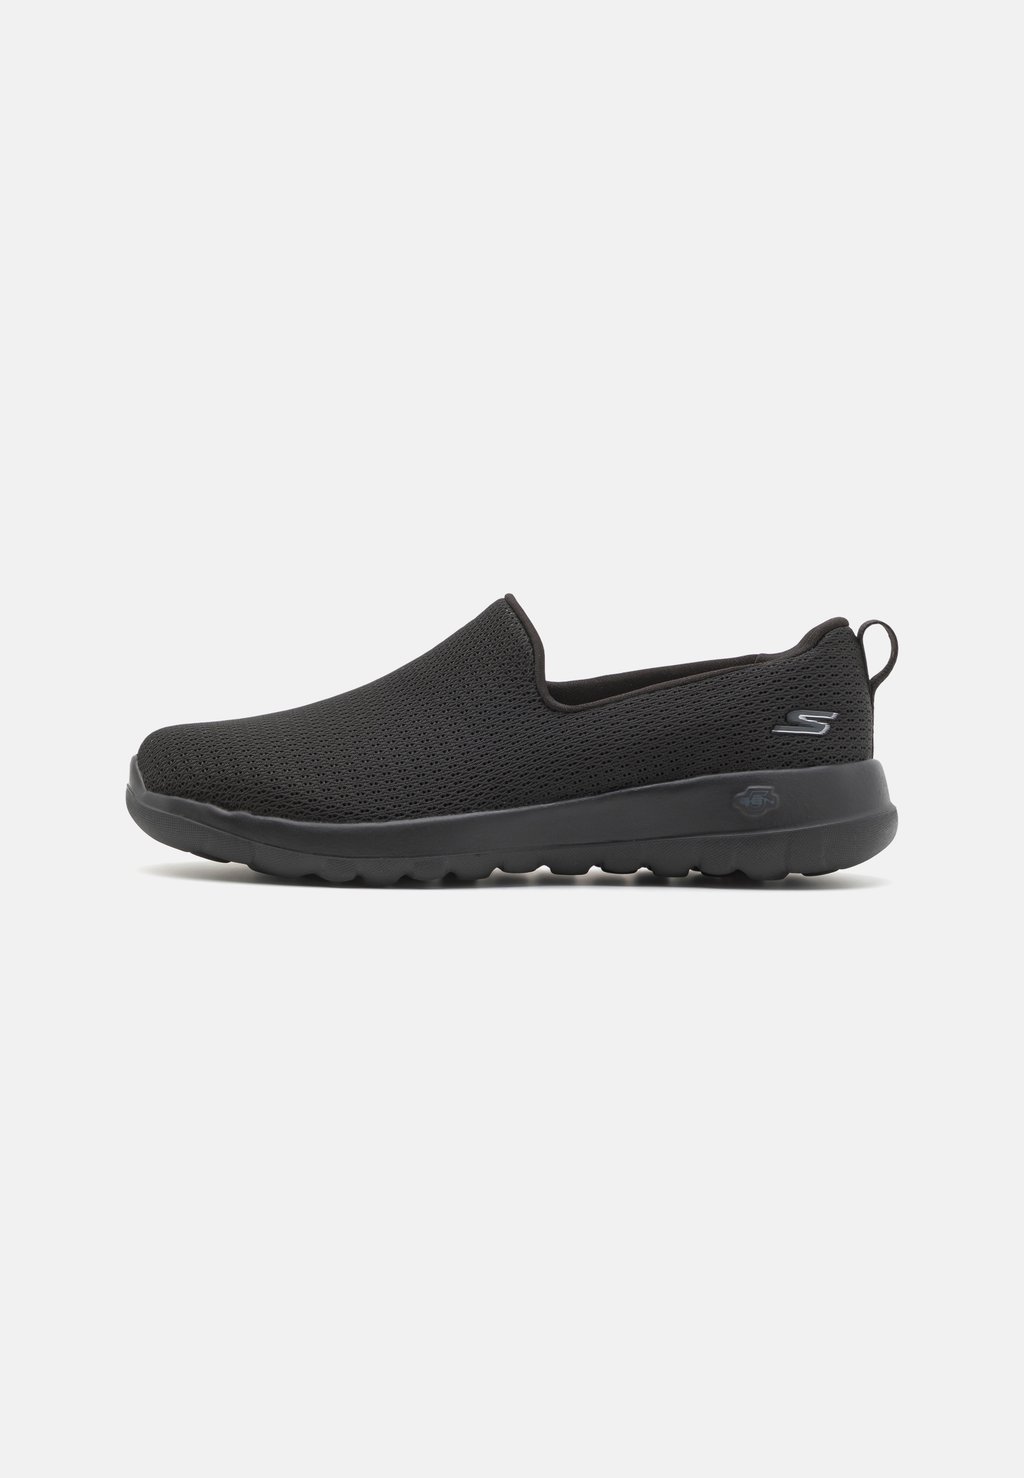 Обувь для ходьбы GO WALK SLIP ON Skechers Performance, цвет black обувь для ходьбы go walk 7 slip on skechers performance цвет black